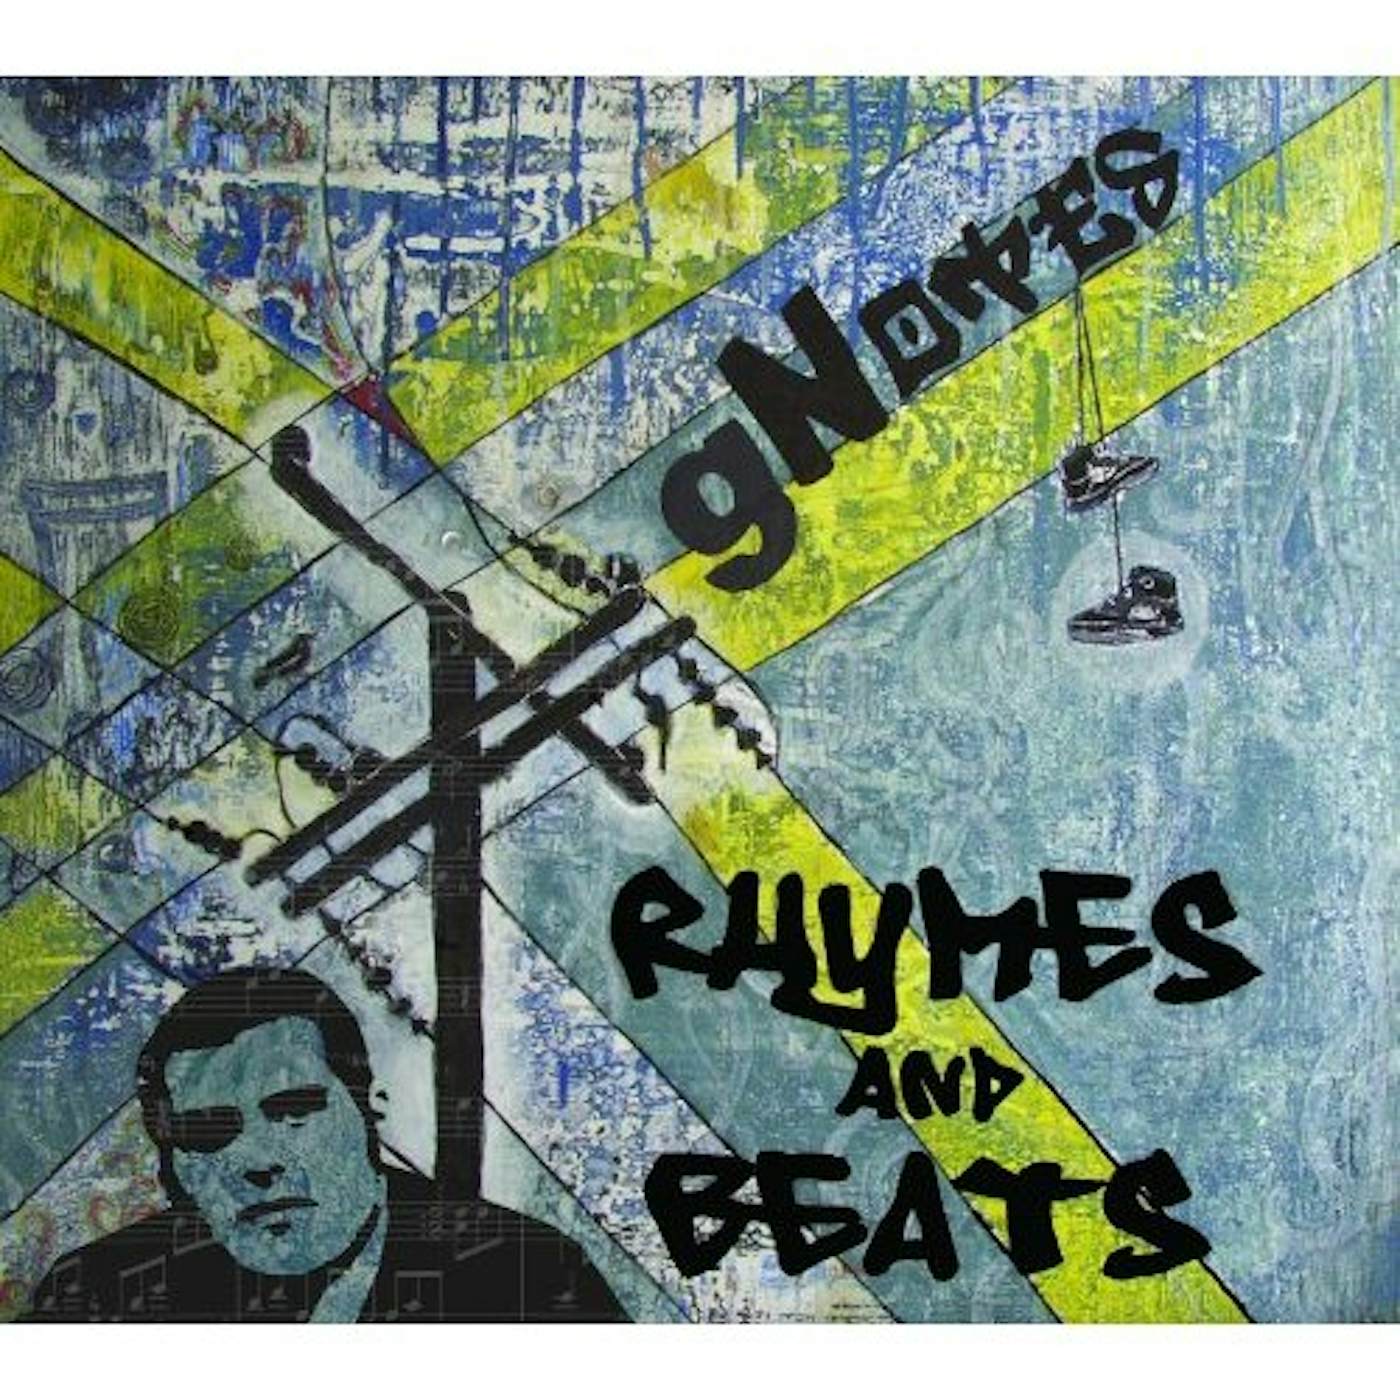 Gnotes RHYMES & BEATS CD